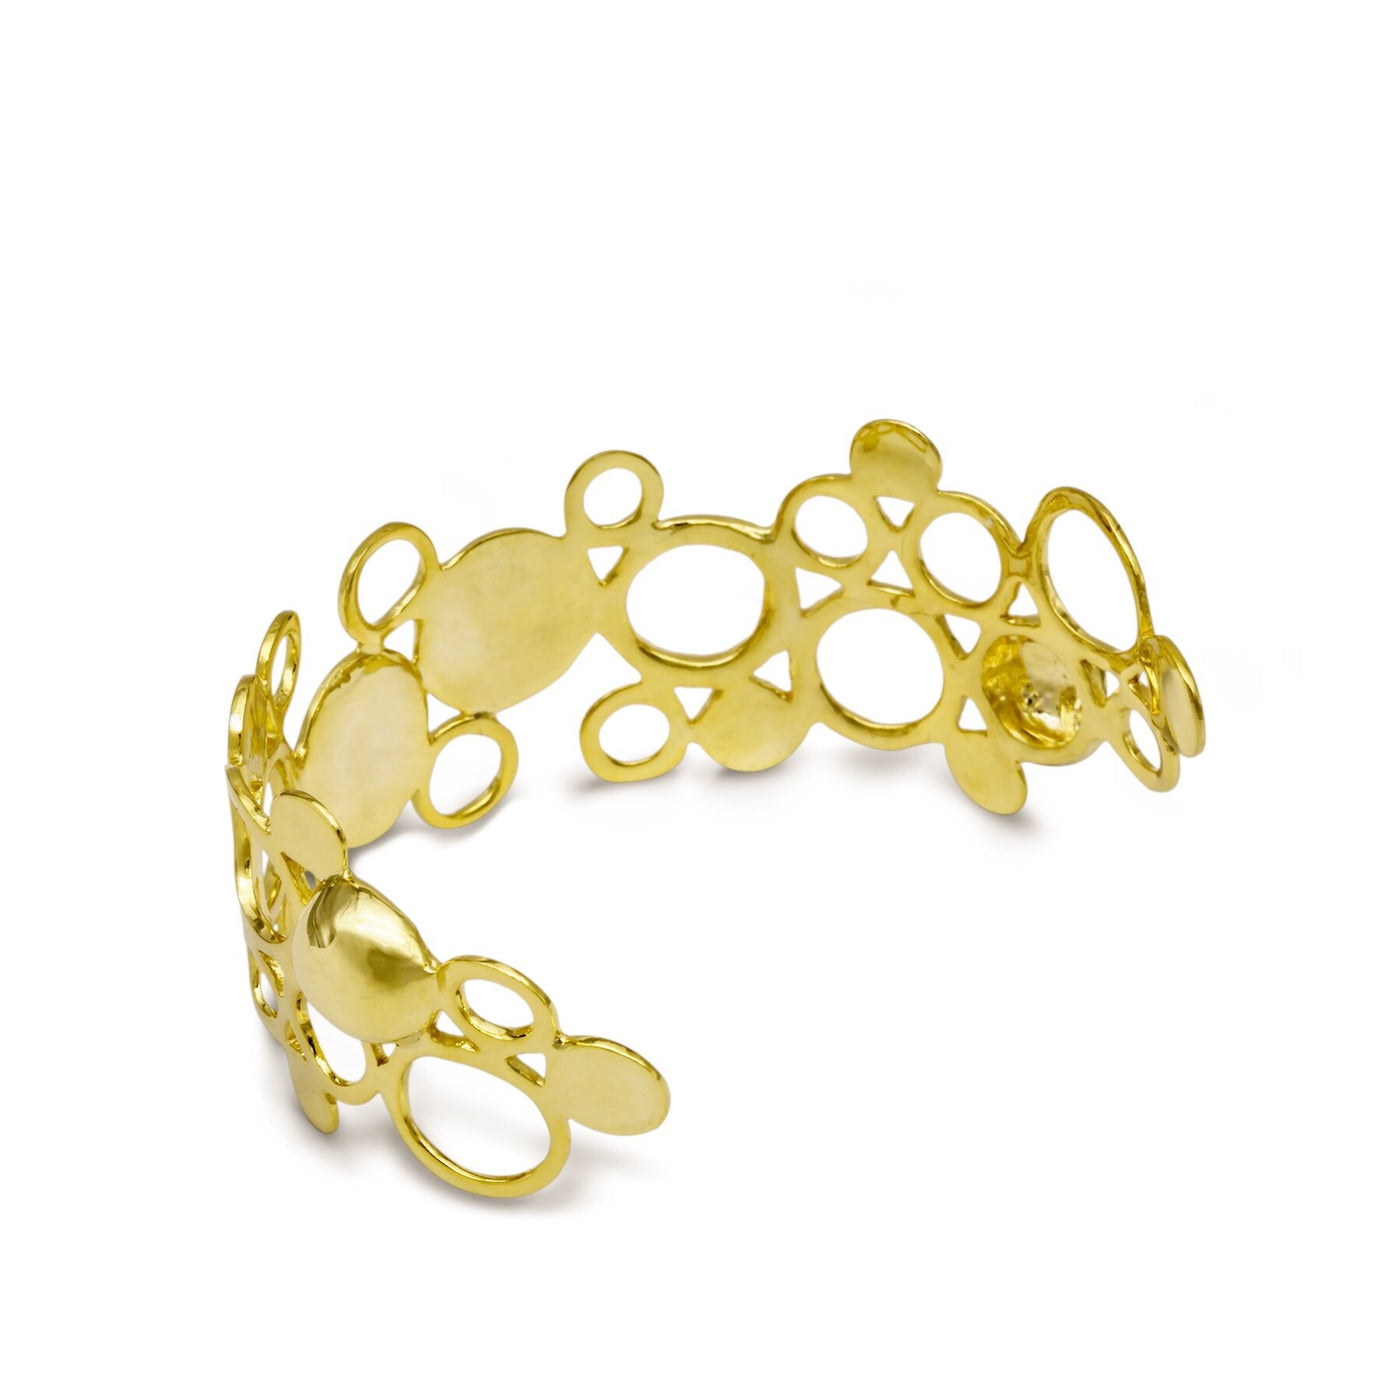 Fine jewelry cuff bracelet in gold from Atelier ORMAN